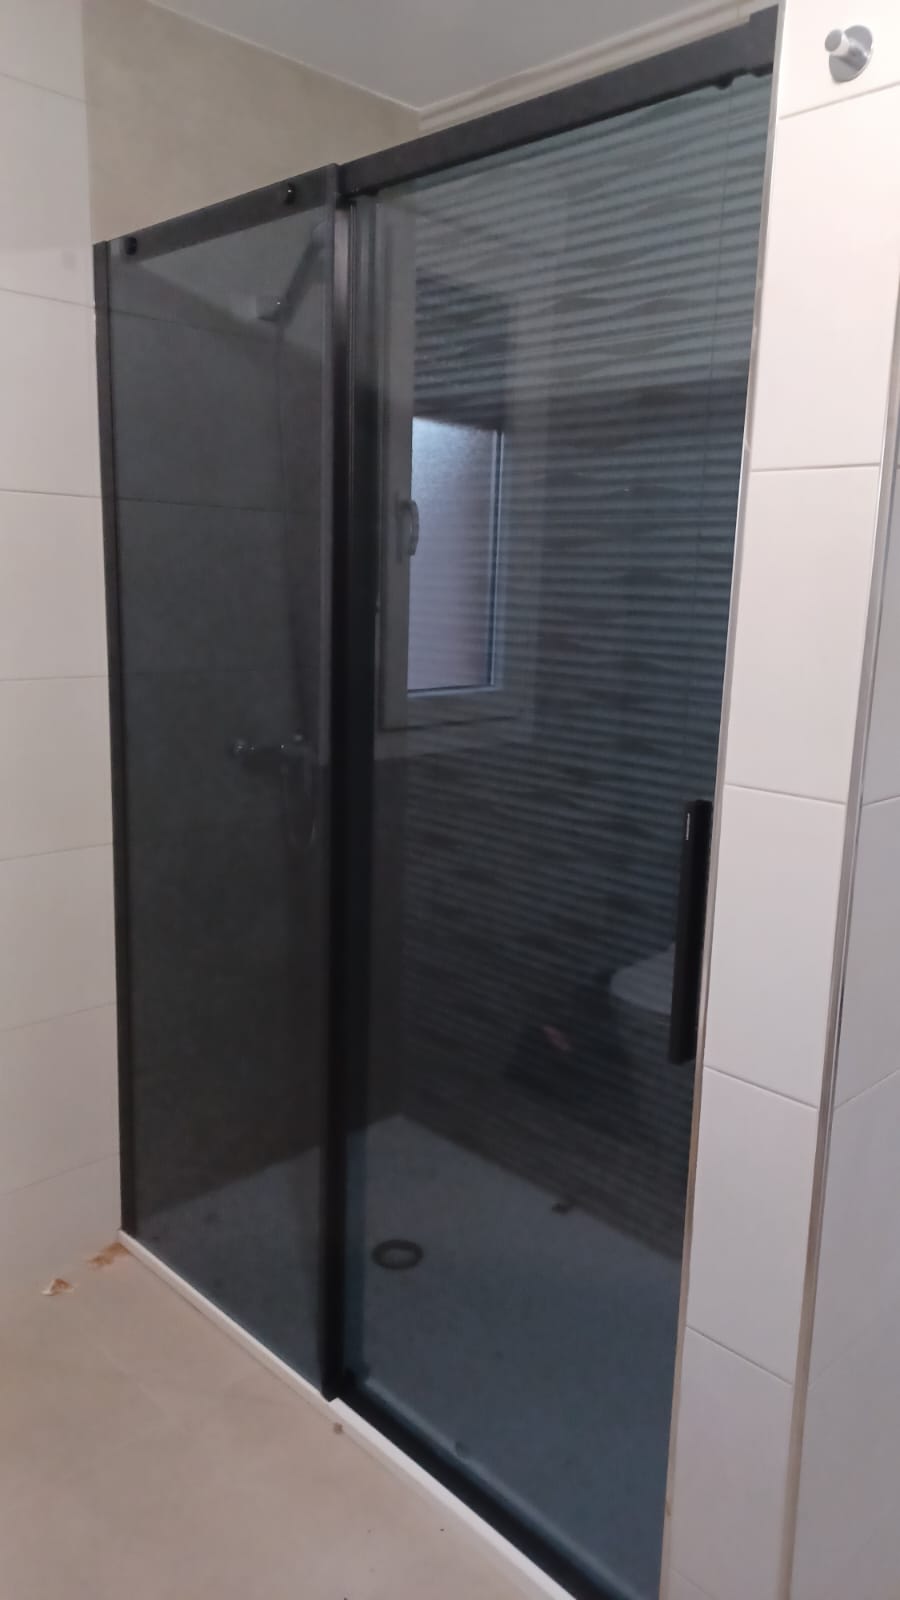 Mampara de ducha en negro para un diseño impactante